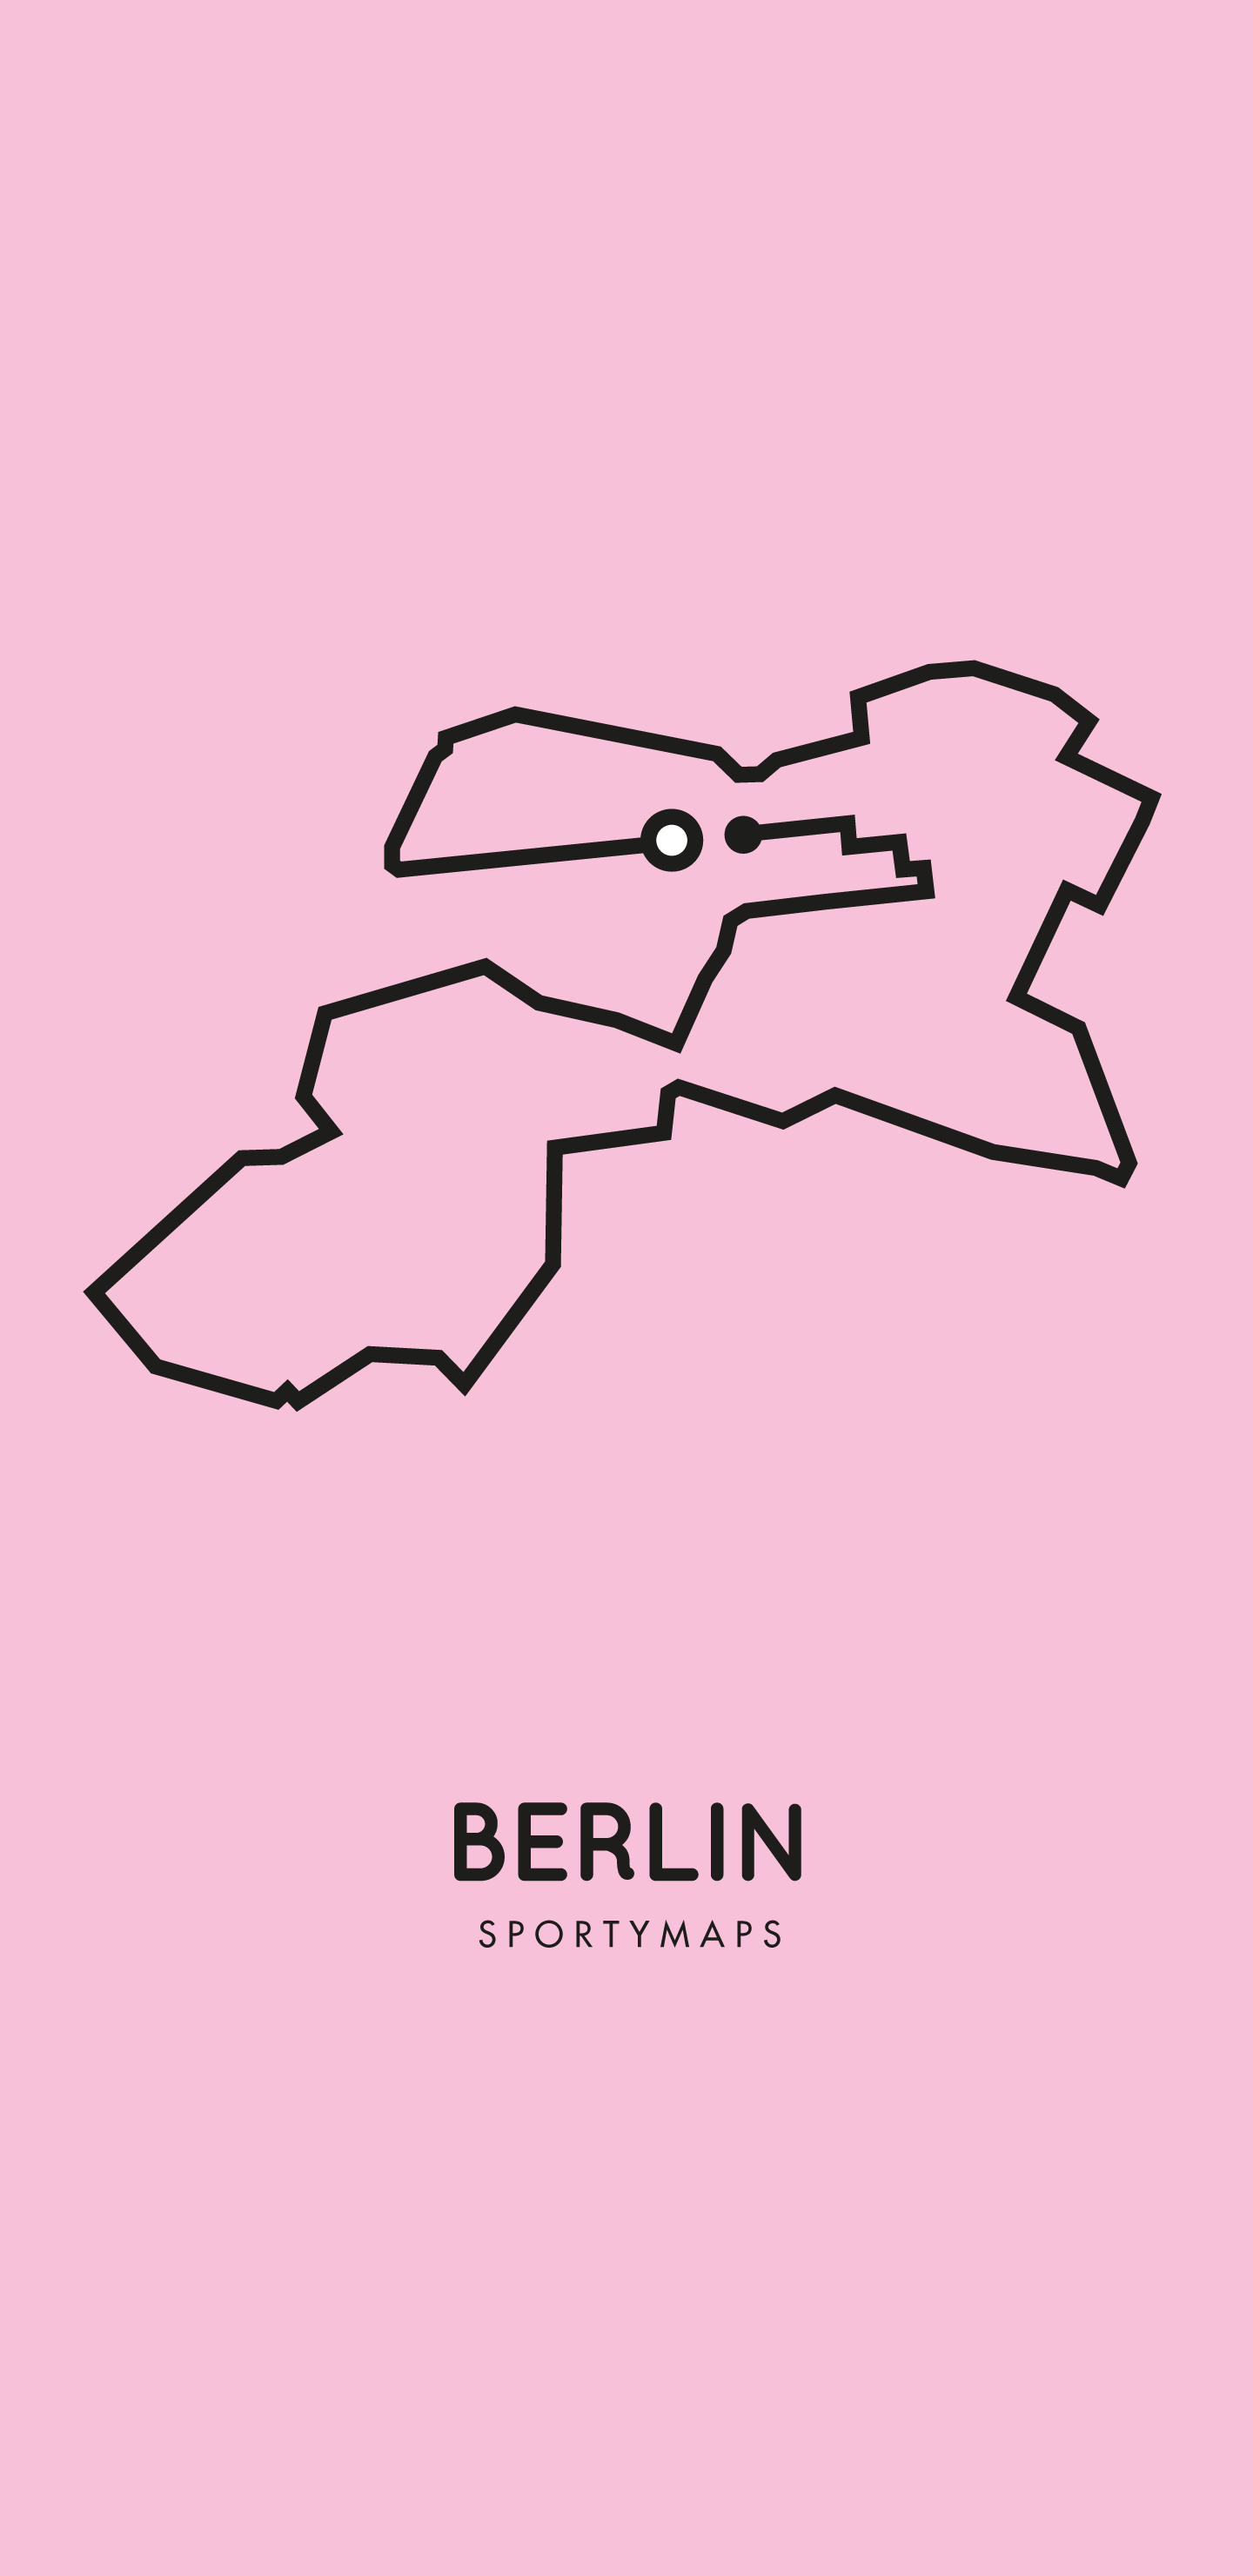 Sportymaps-Berlin-marathon-pink